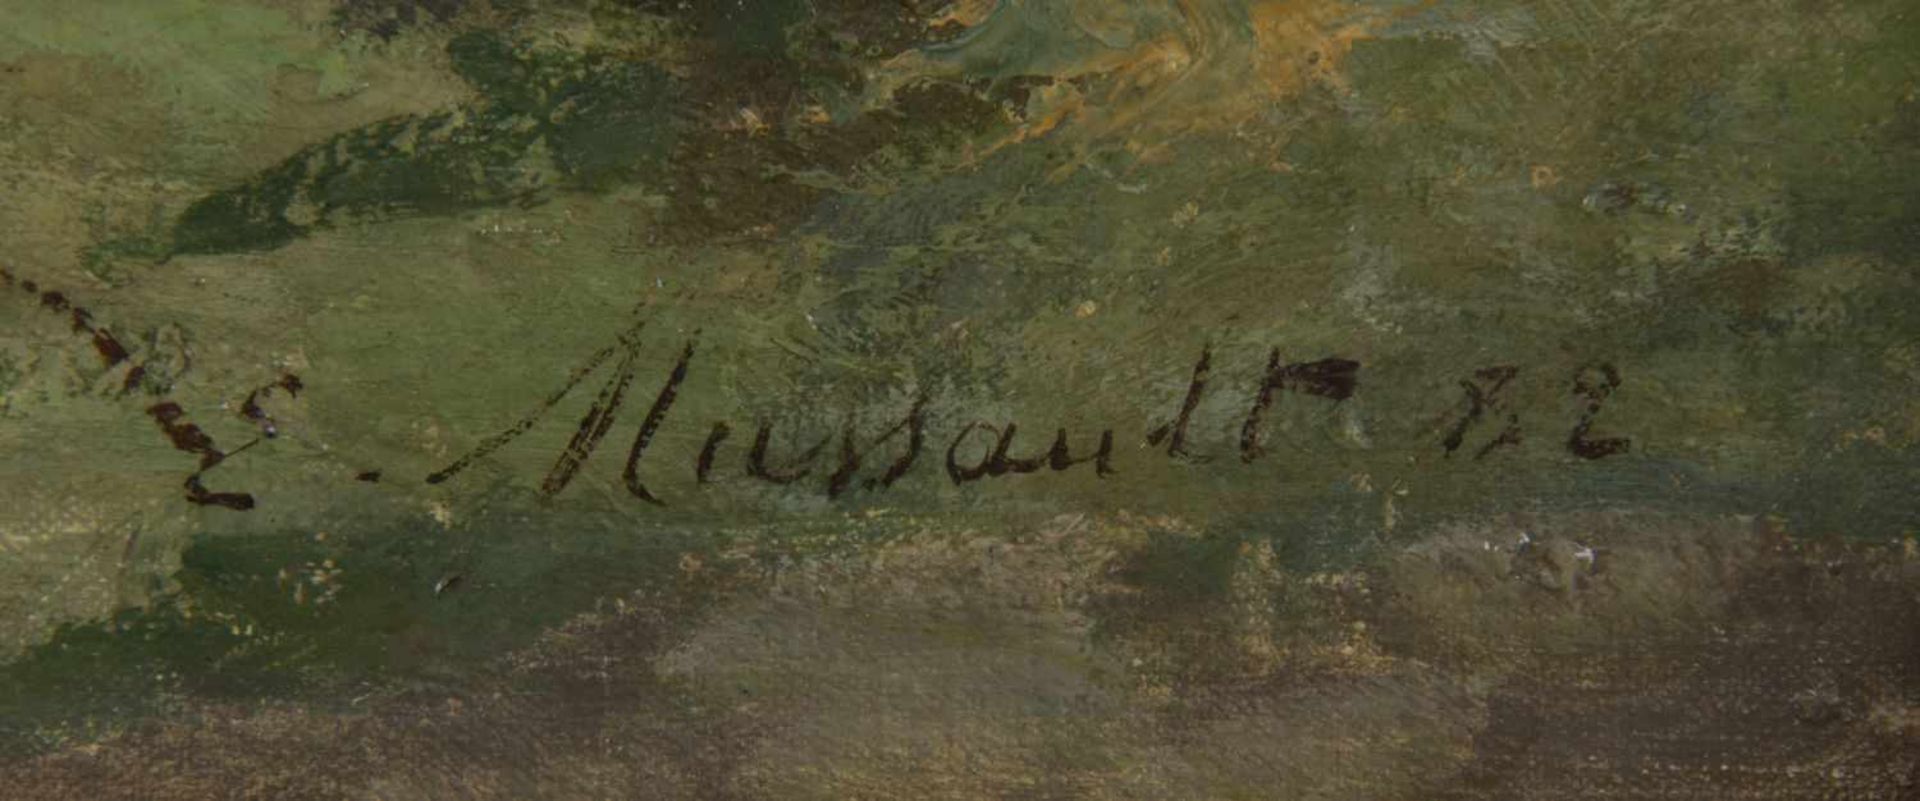 Mussault, EmileEin Bach im Frühling. Öl/Lwd., auf Holz aufgezogen. Sign. und dat. (18)82. 61 x 41, - Bild 2 aus 4